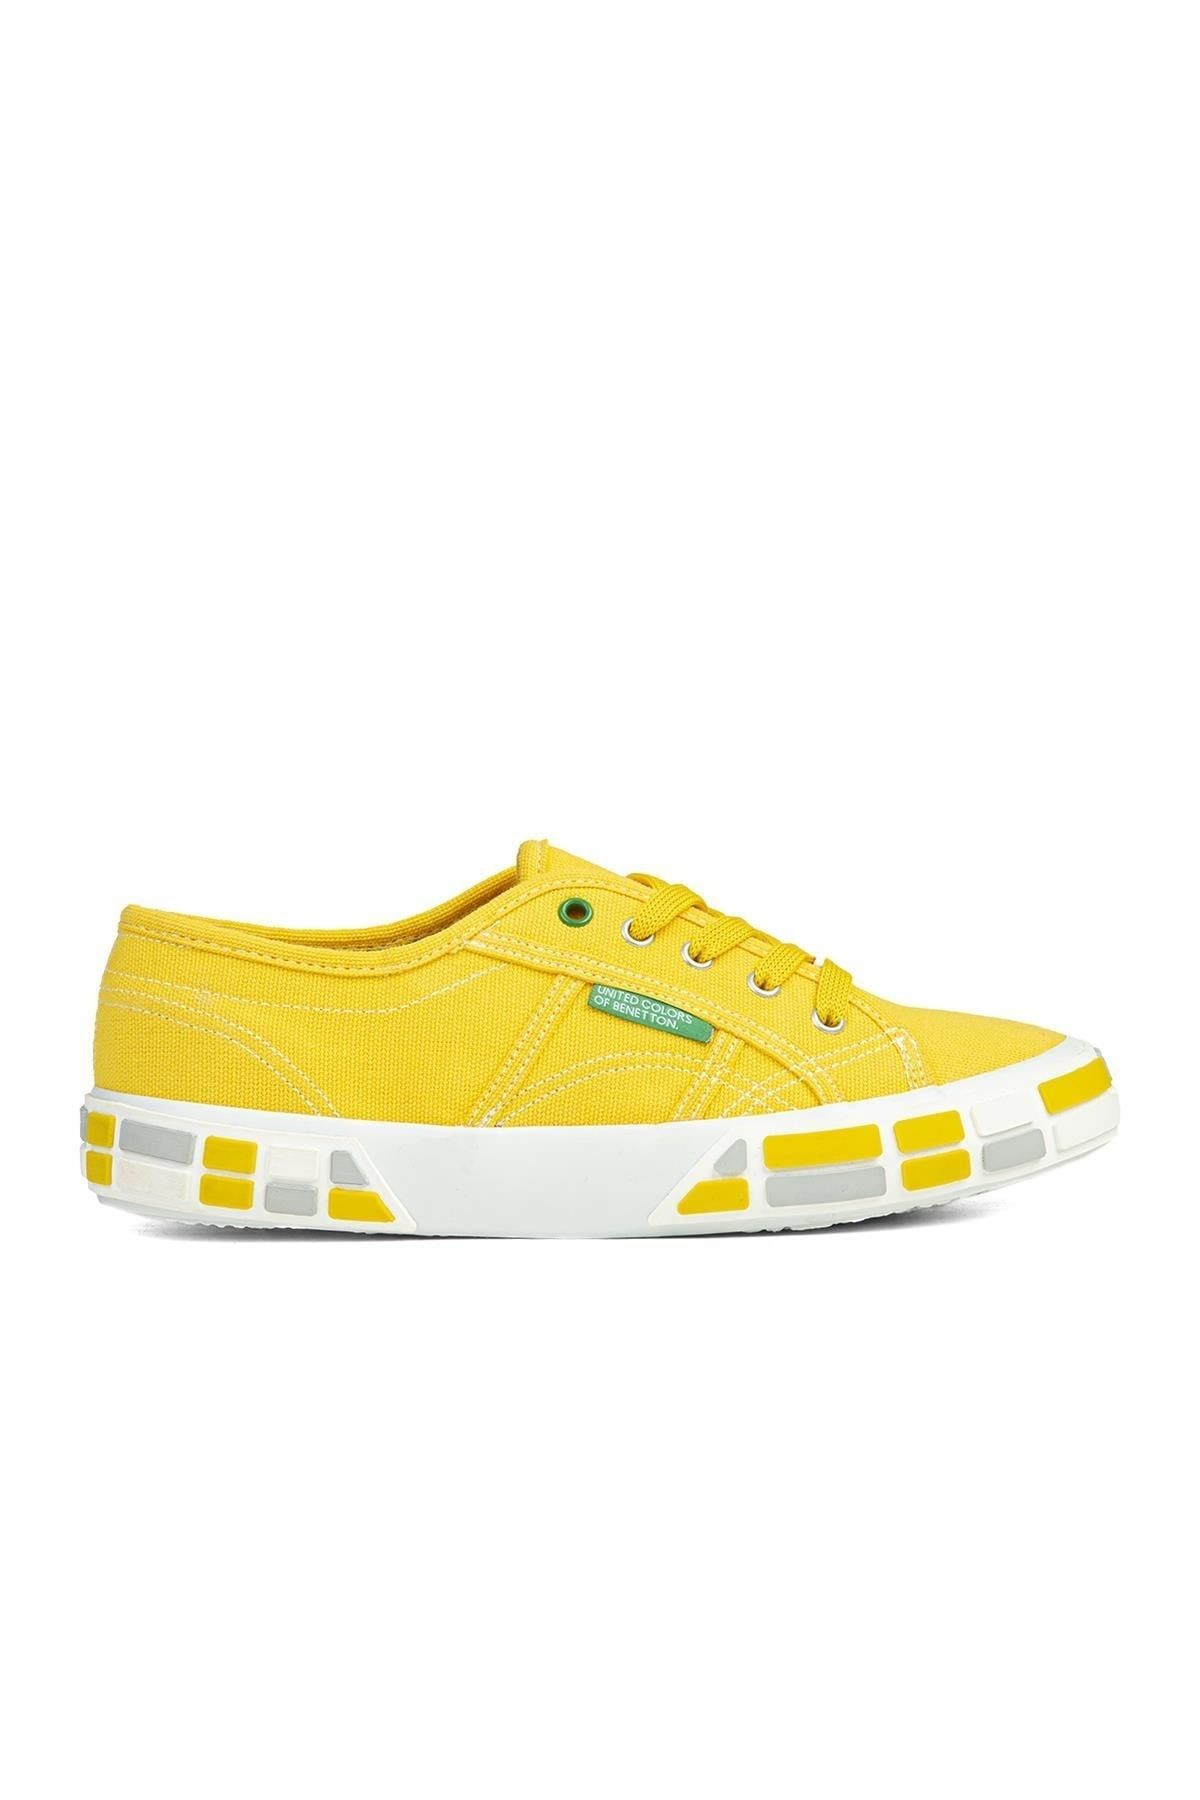 Benetton ® | Bn-30691-3114 Sarı - Kadın Spor Ayakkabı